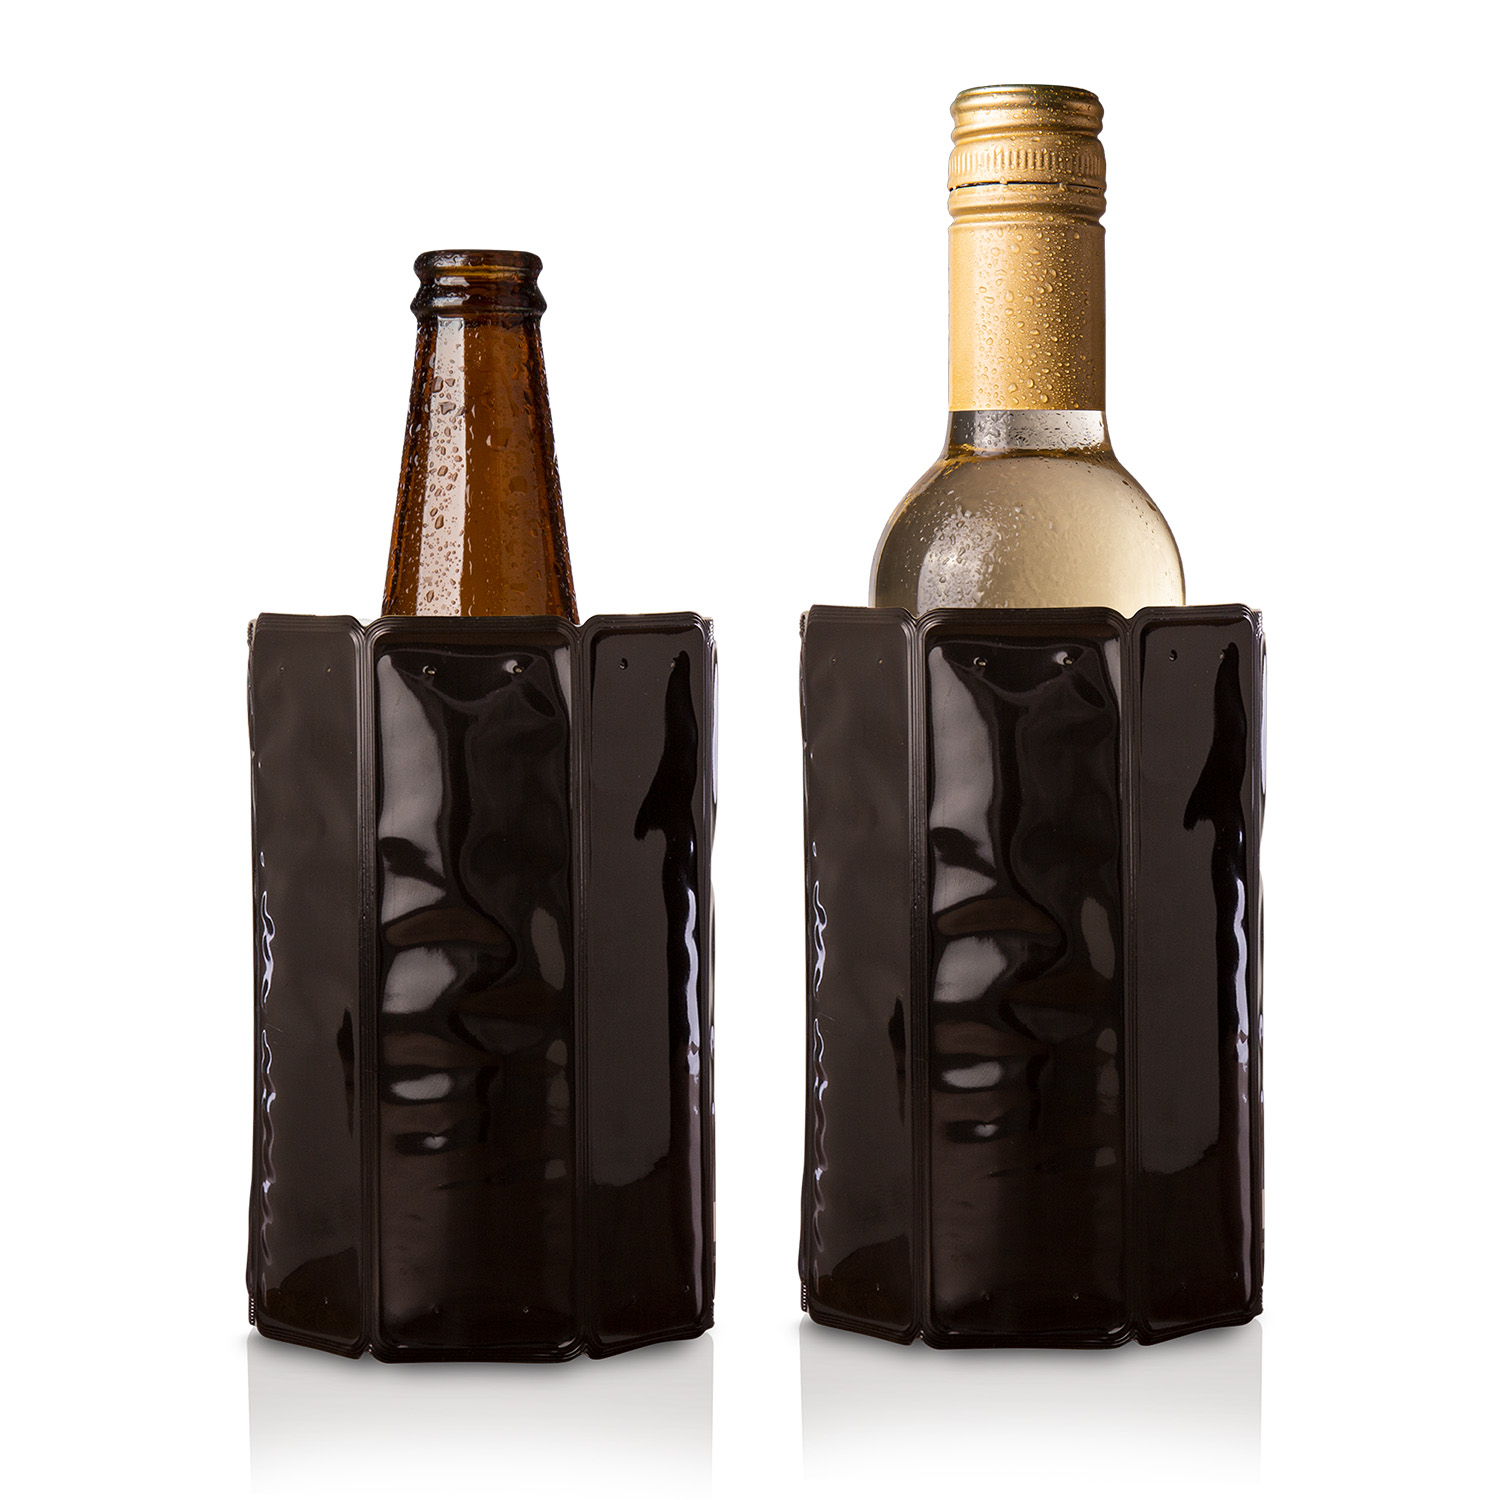 Active Cooler Mini - refroidisseur de vin - Refroidisseur de vin